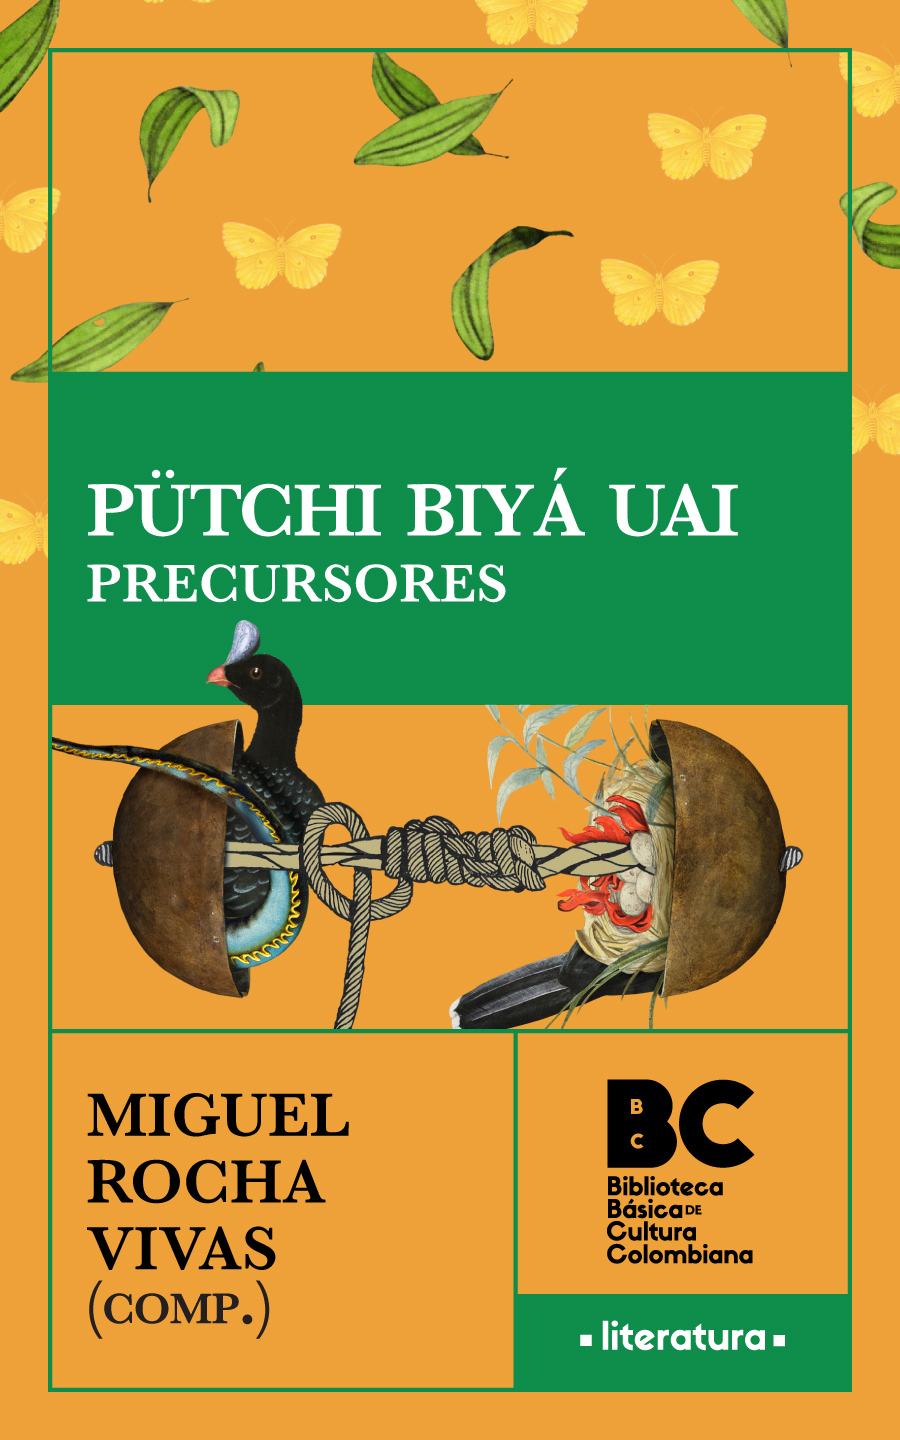 Catalogación en la publicación Biblioteca Nacional de Colombia Pütchi biyá - photo 1